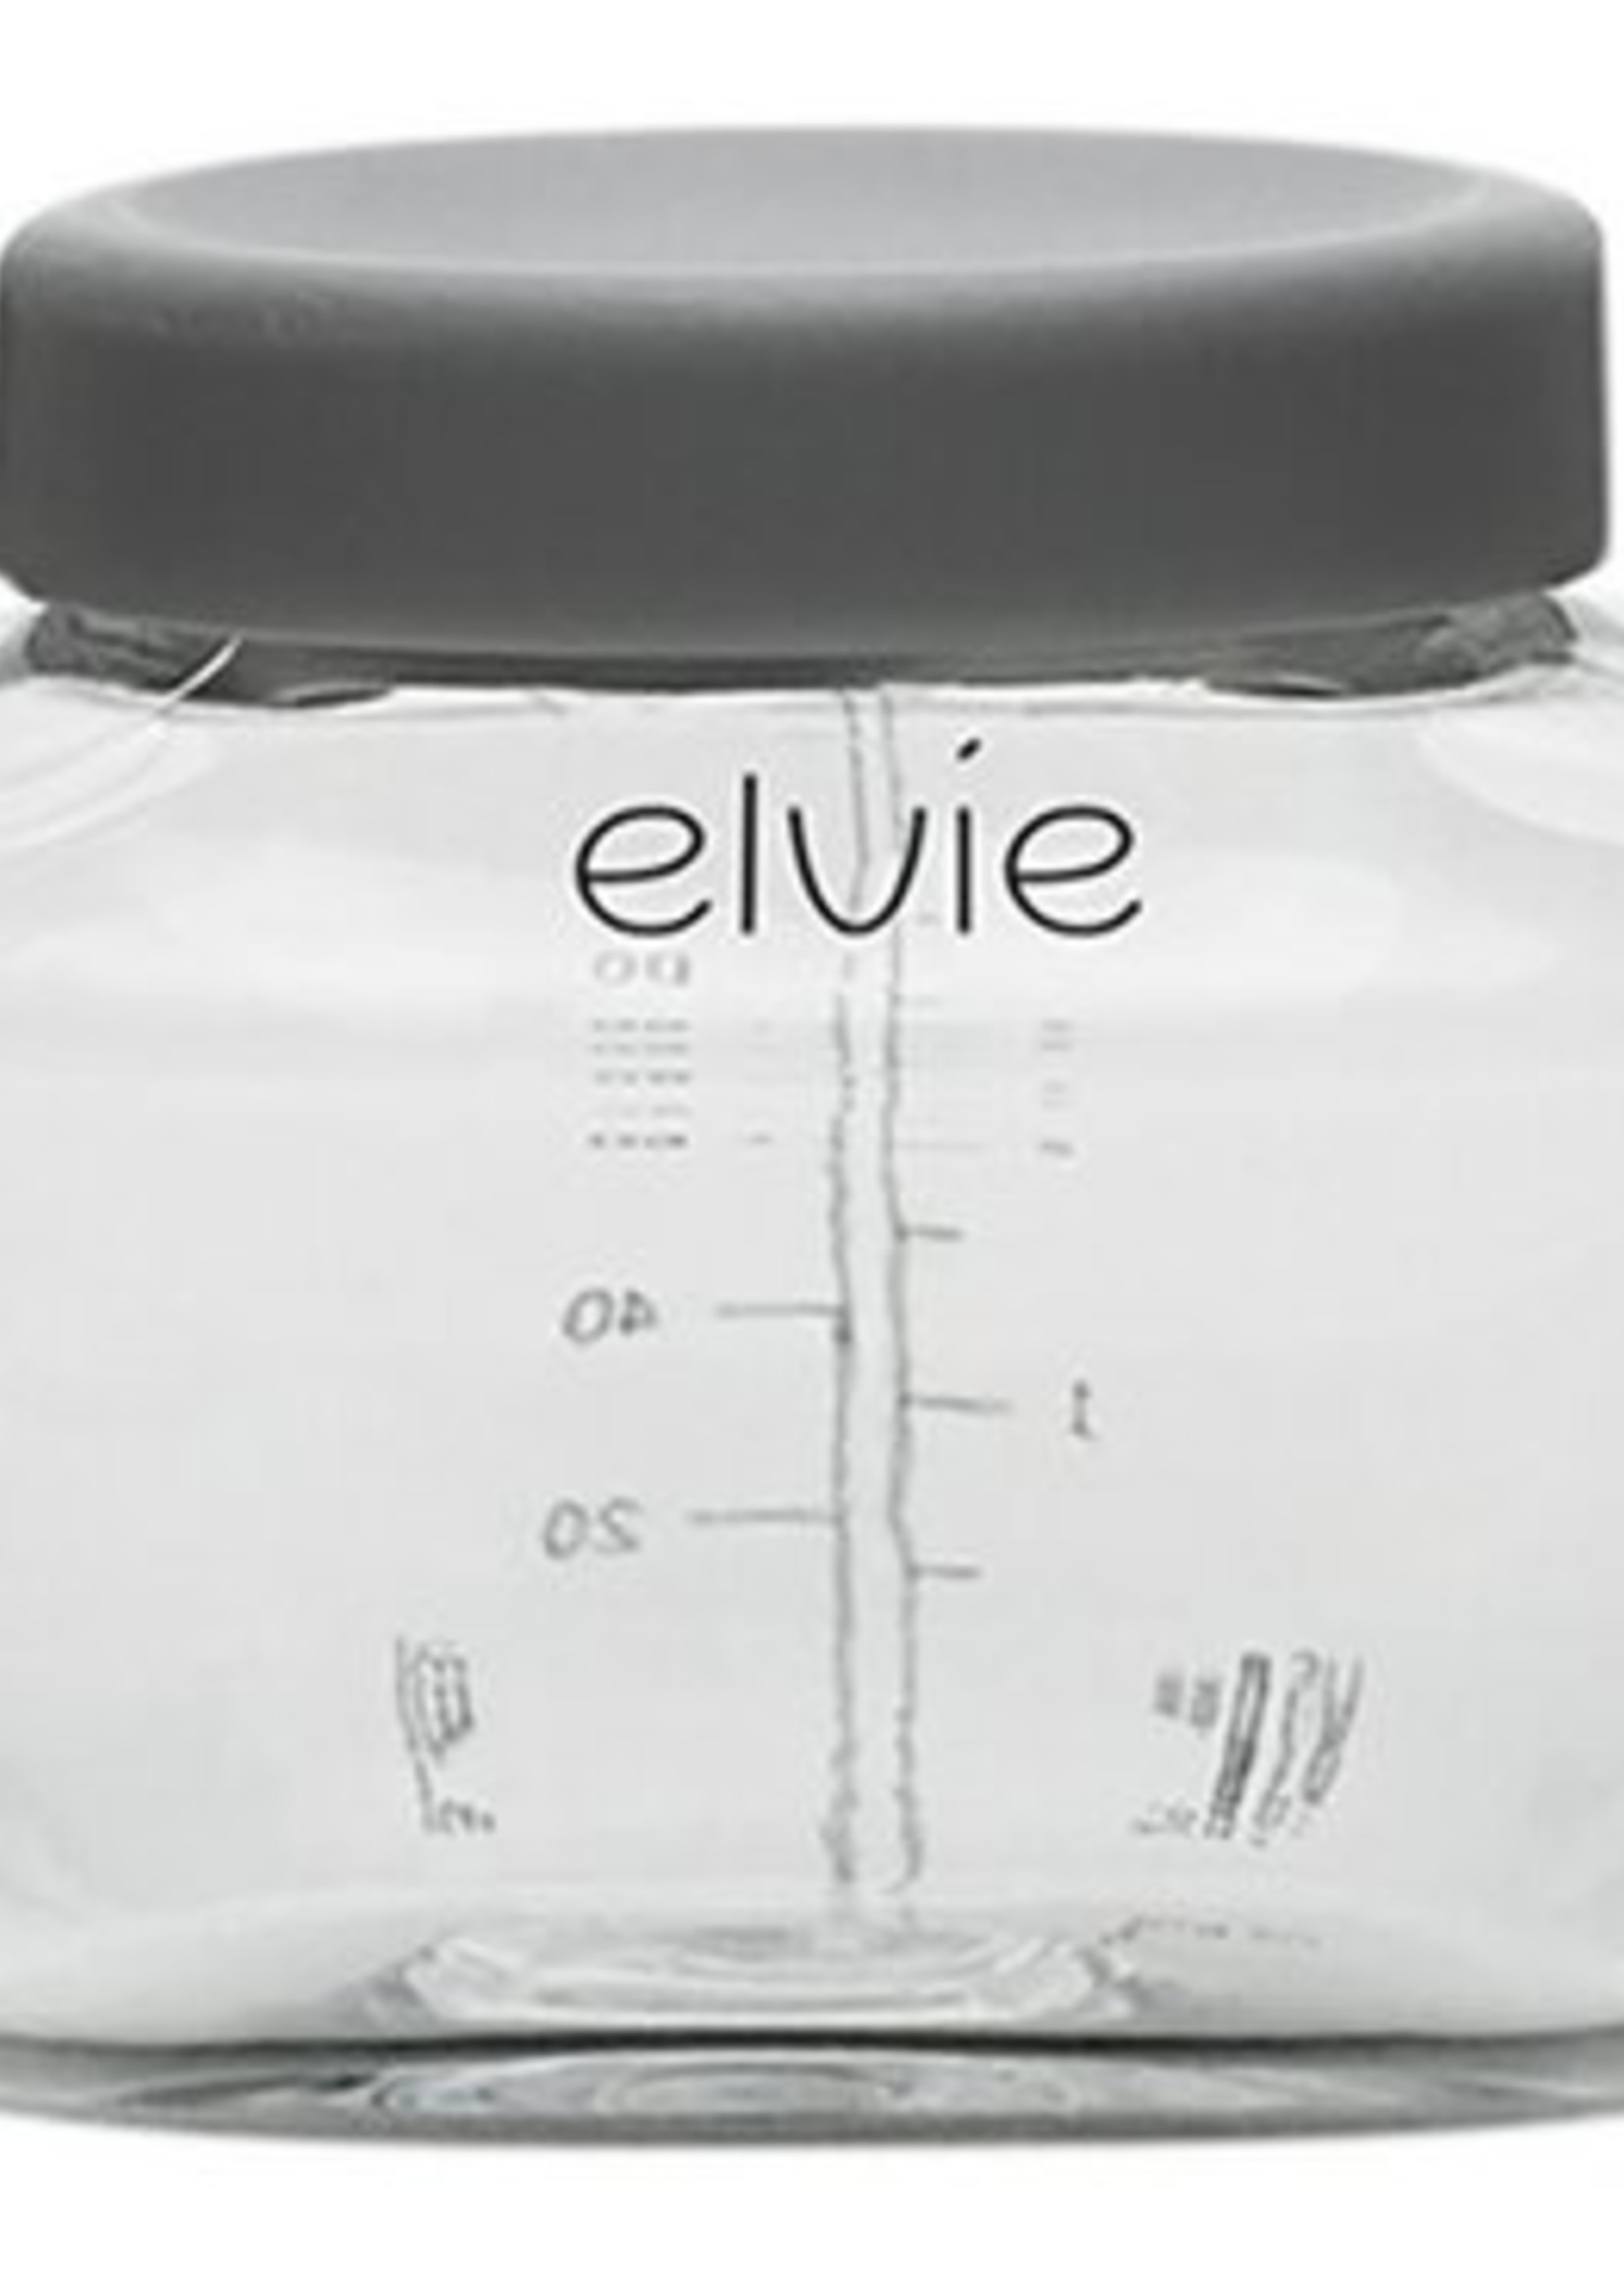 Elvie bottles 150 ml - 3 pack - Amori